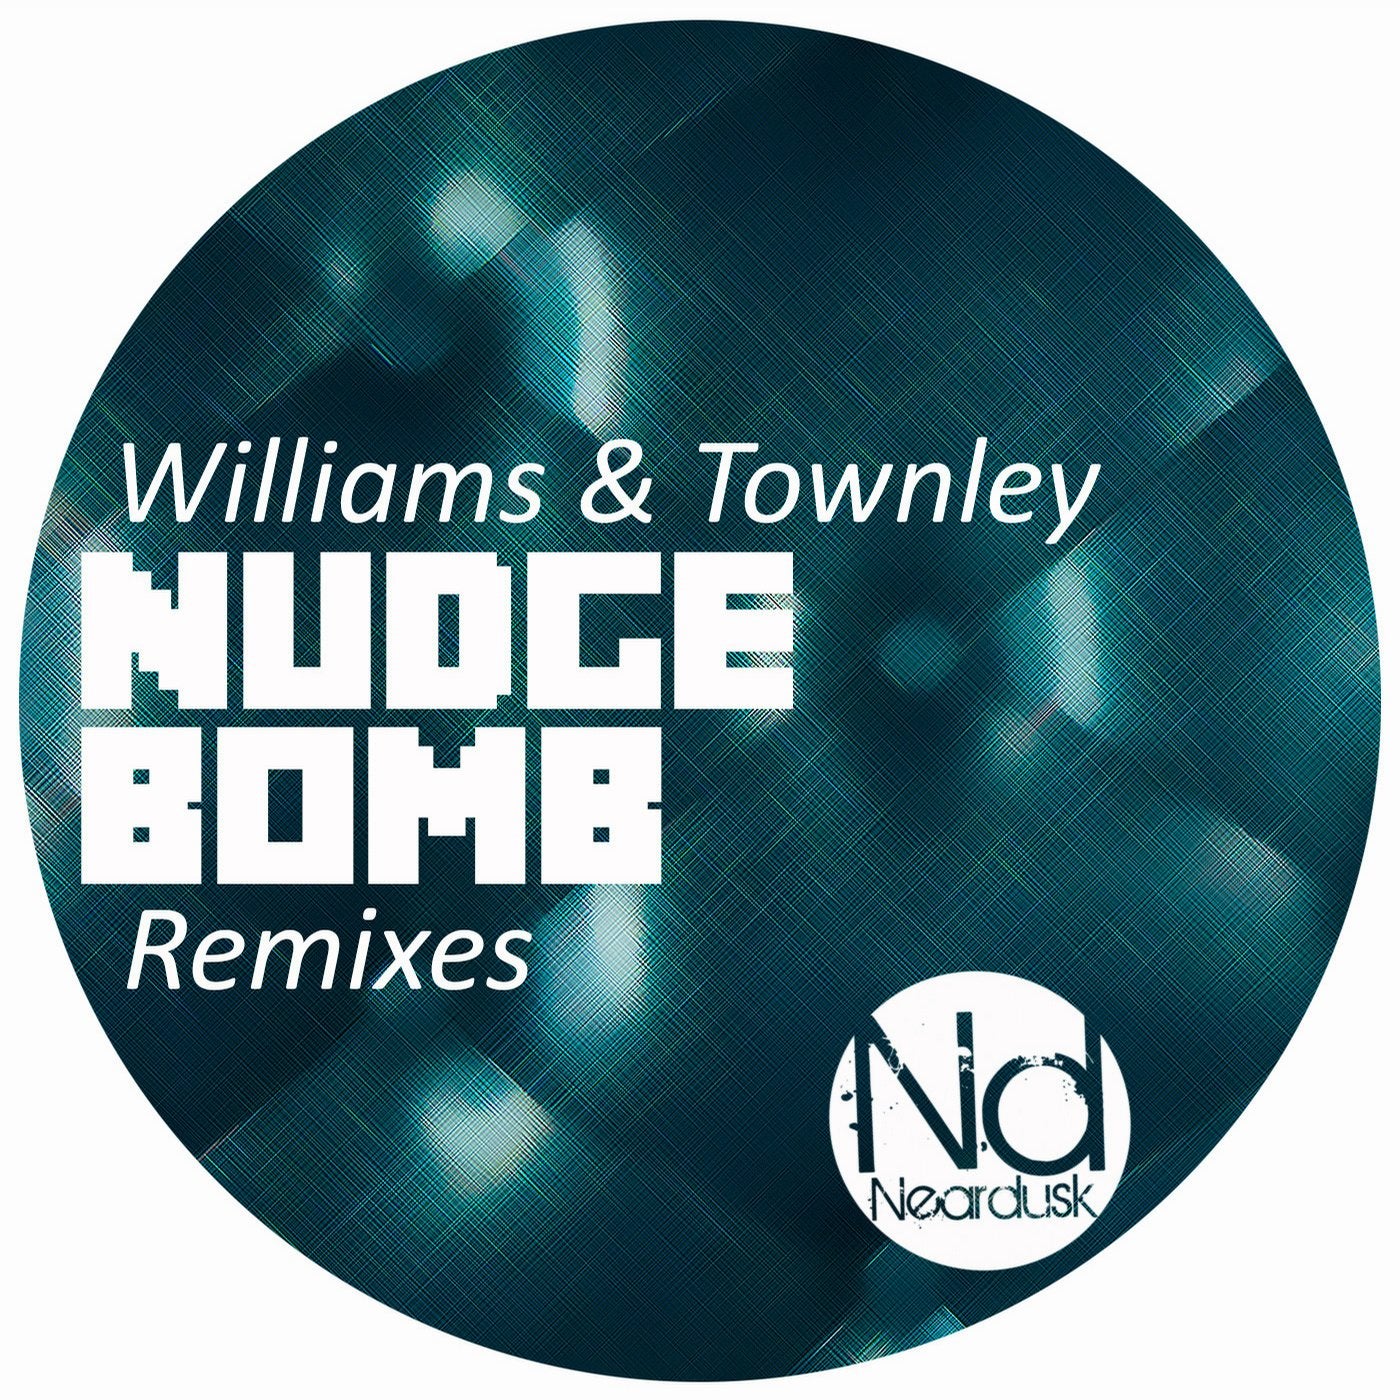 Nudge Bomb Remixes